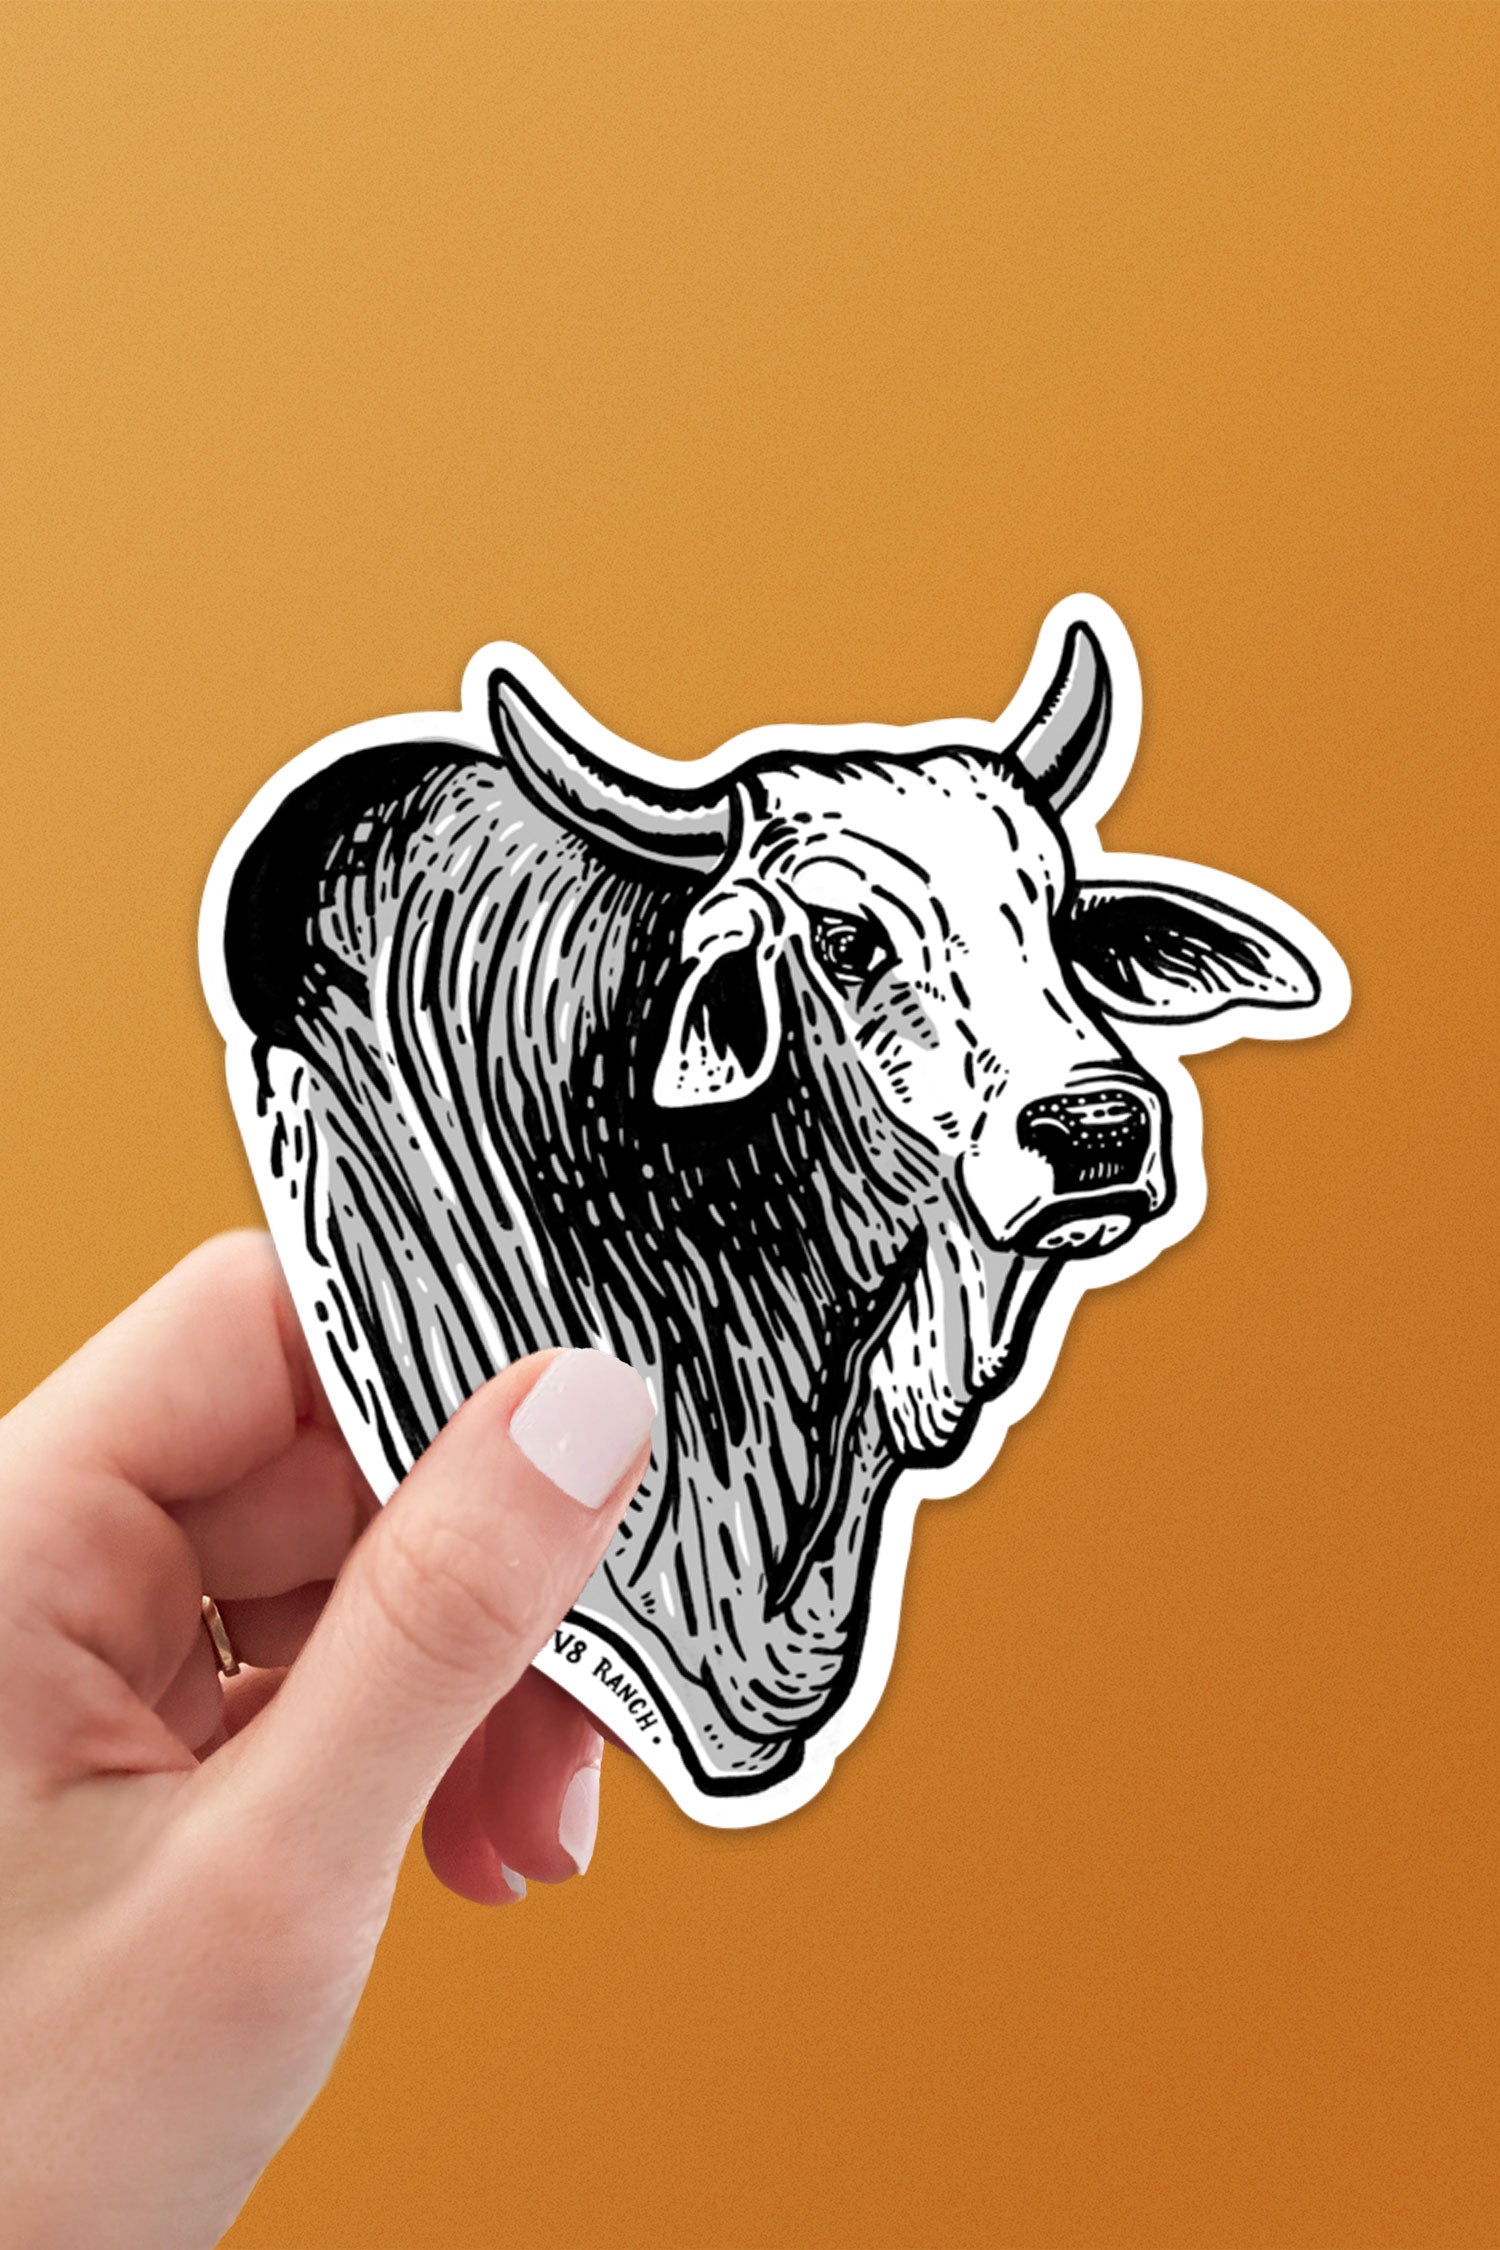 Brahman Bull V8 Sticker